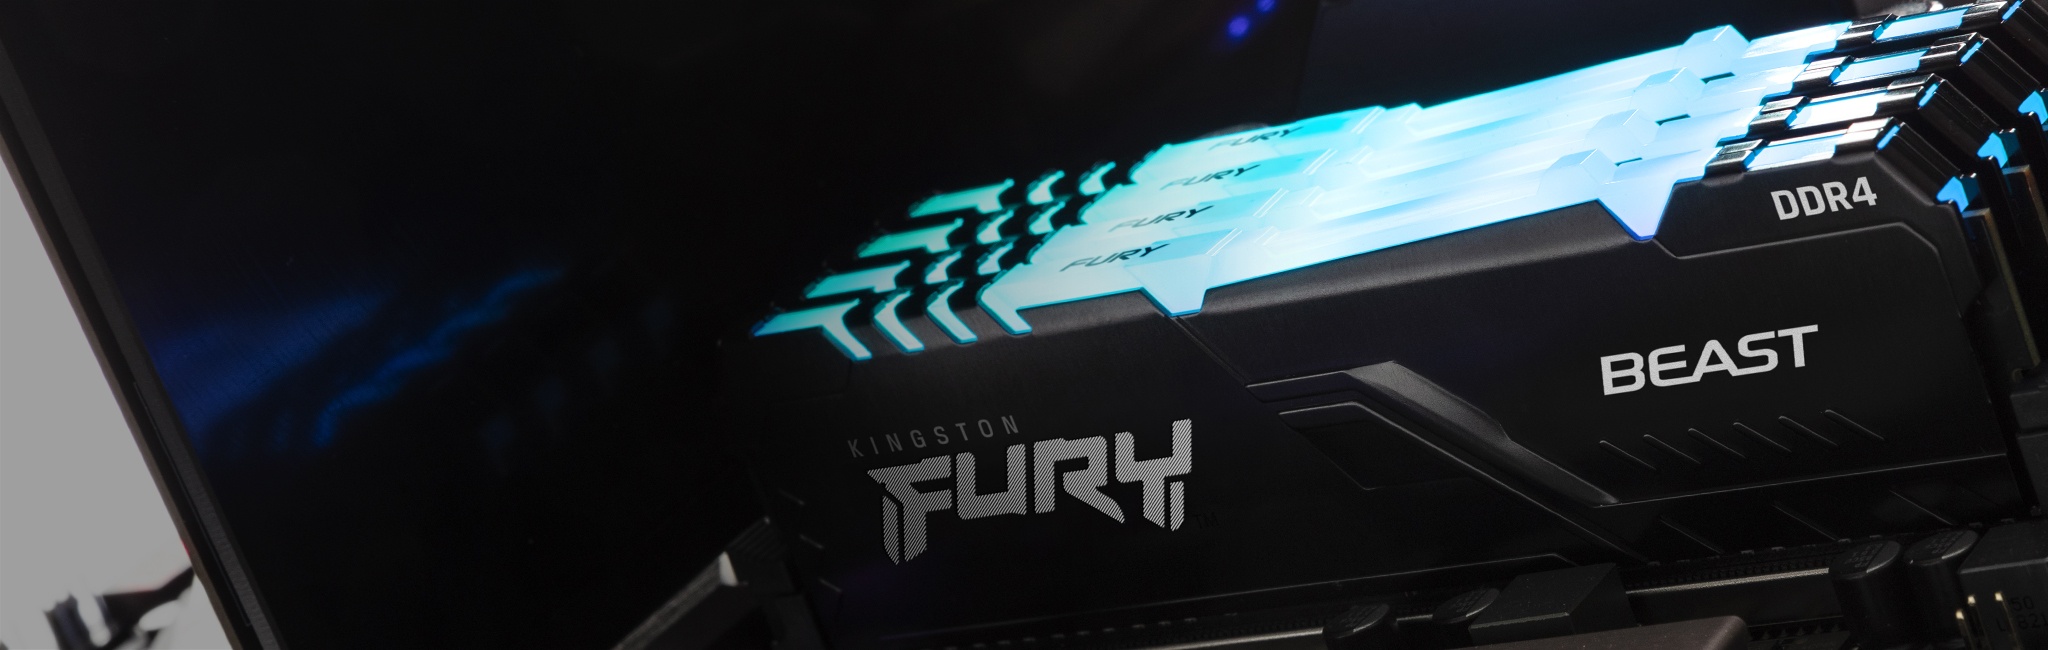 PC에 설치된 상태에서 모듈 상단이 파란색으로 빛나는 Kingston FURY Beast RGB